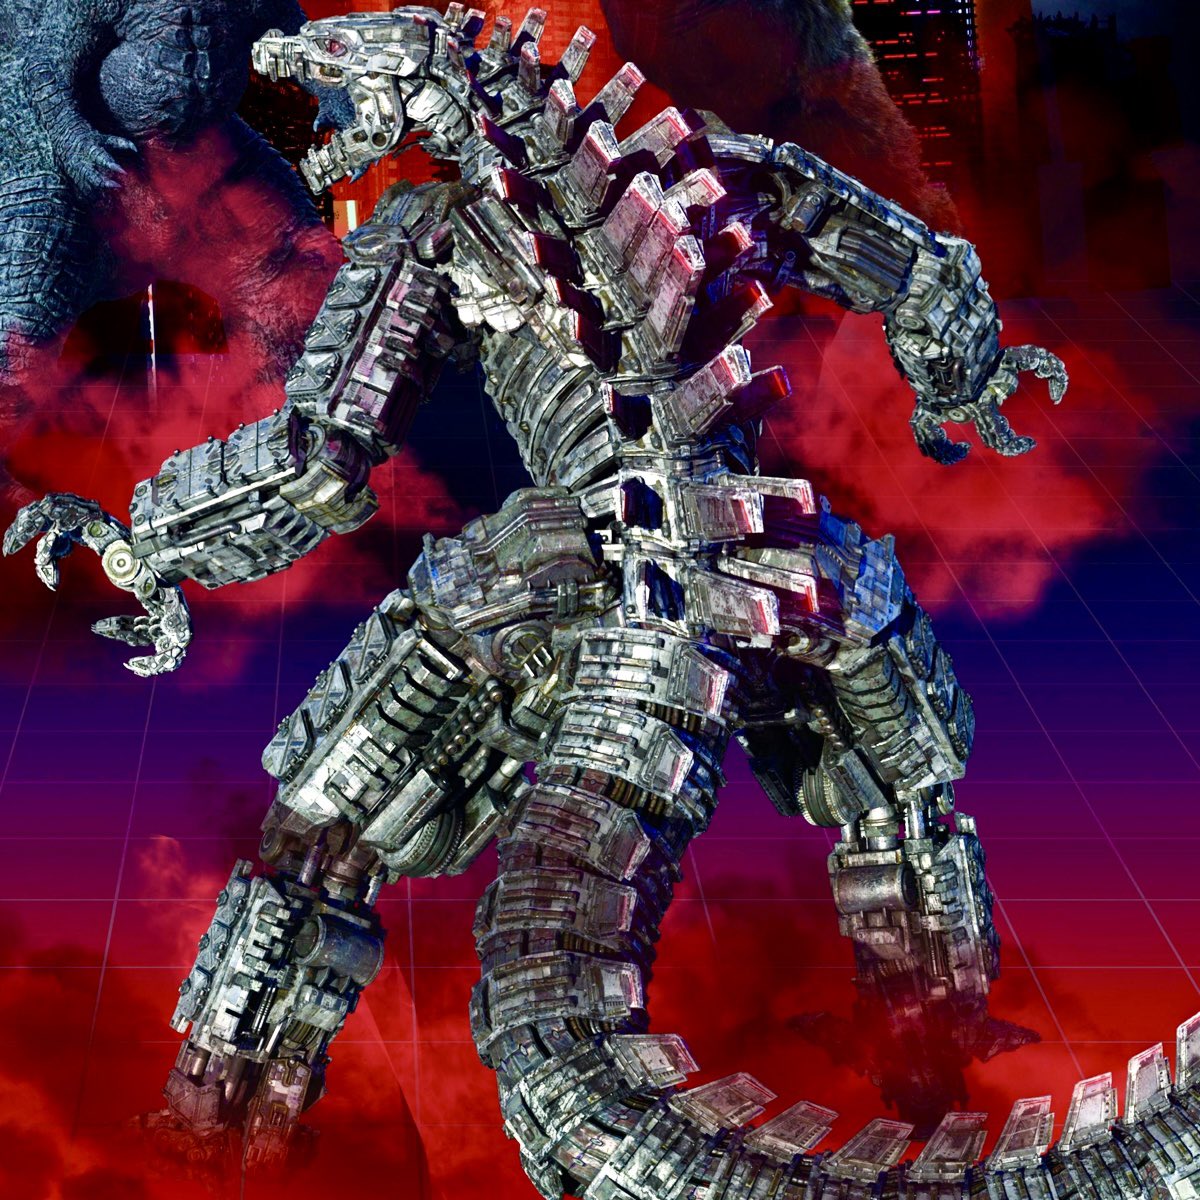 Would you like to see MechaGodzilla return for Godzilla X Kong?